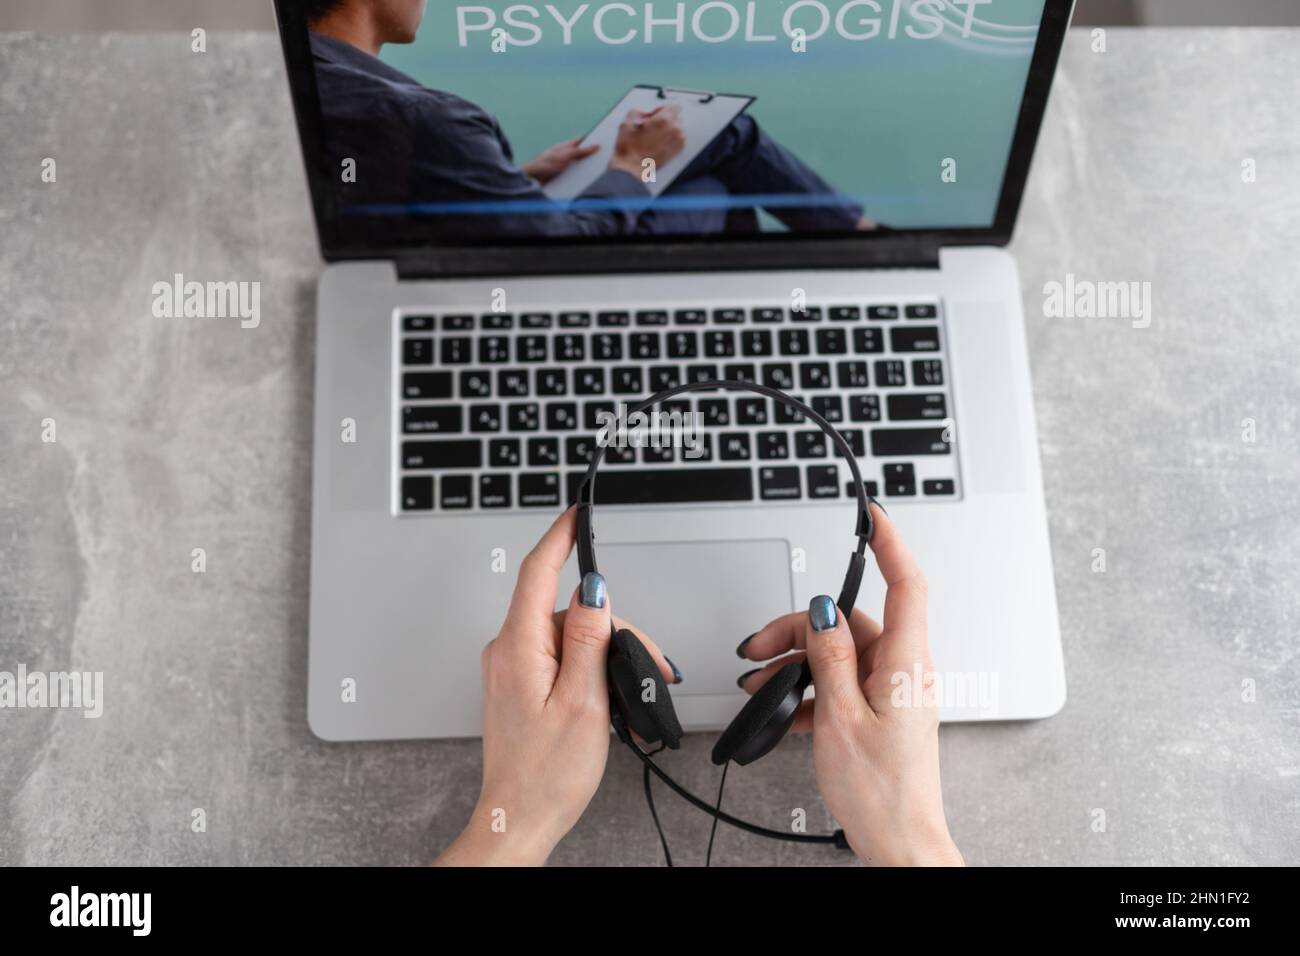 Consulta psicológica en línea - el hombre enumera sus problemas - se comunica con el paciente utilizando la tecnología digital - psicodiagnóstico remoto Foto de stock